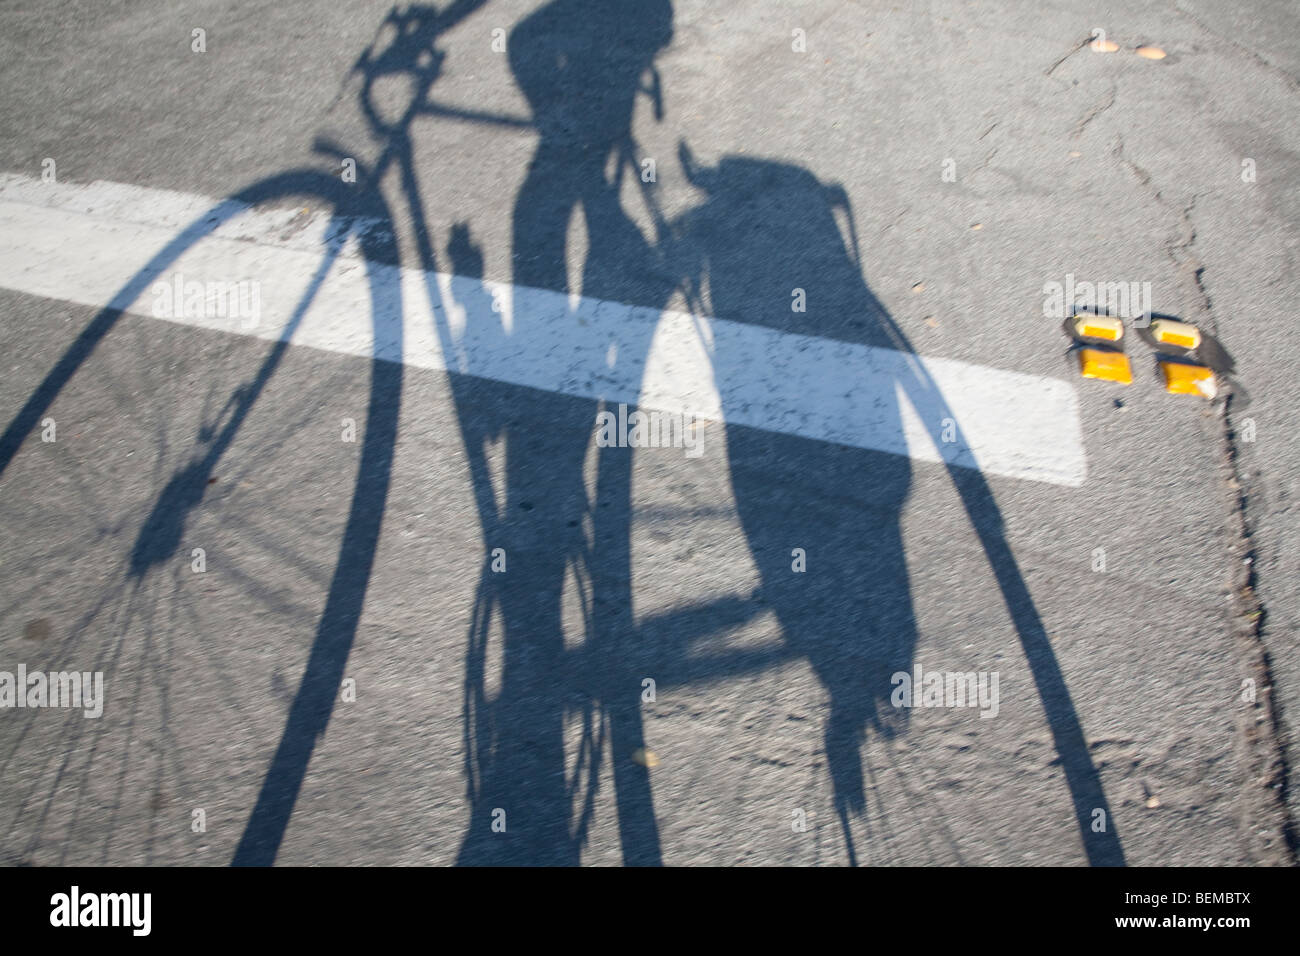 Des Radfahrers langen Schatten auf die Straße fallen. Die Radfahrer trägt Ausrüstung im Koffer neben das Hinterrad. Stockfoto